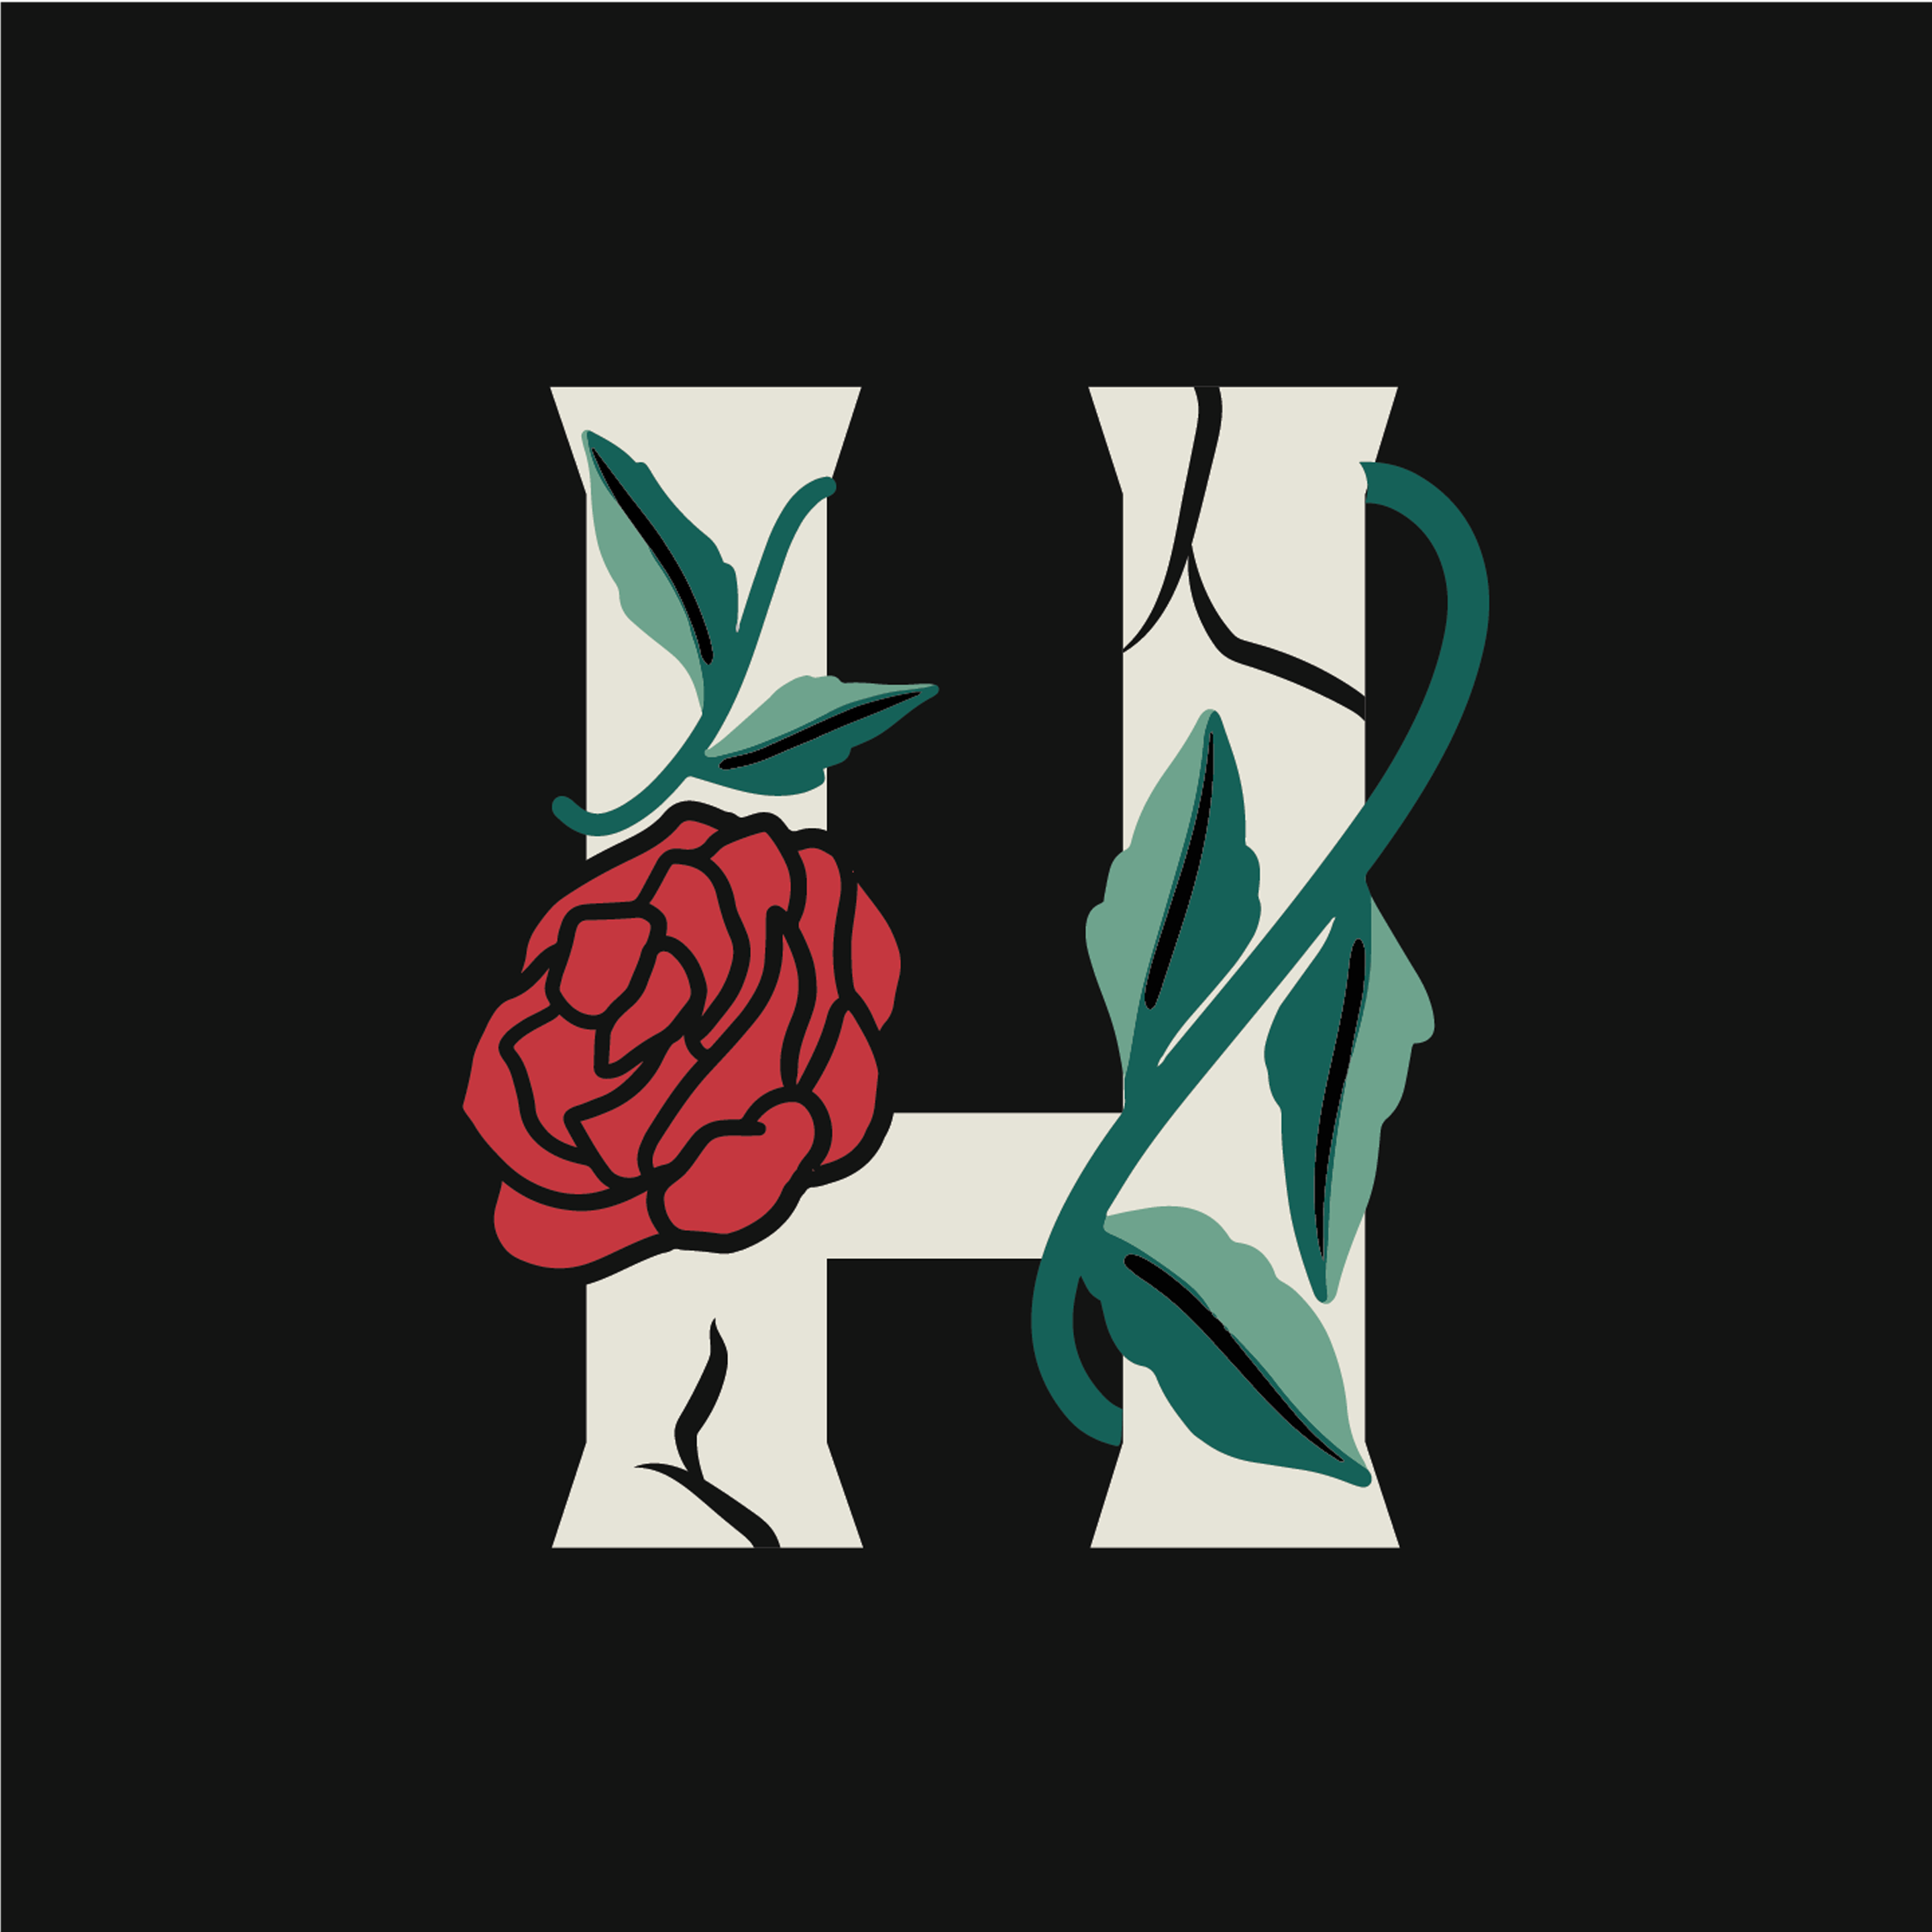 rose-letter-h-design-theme